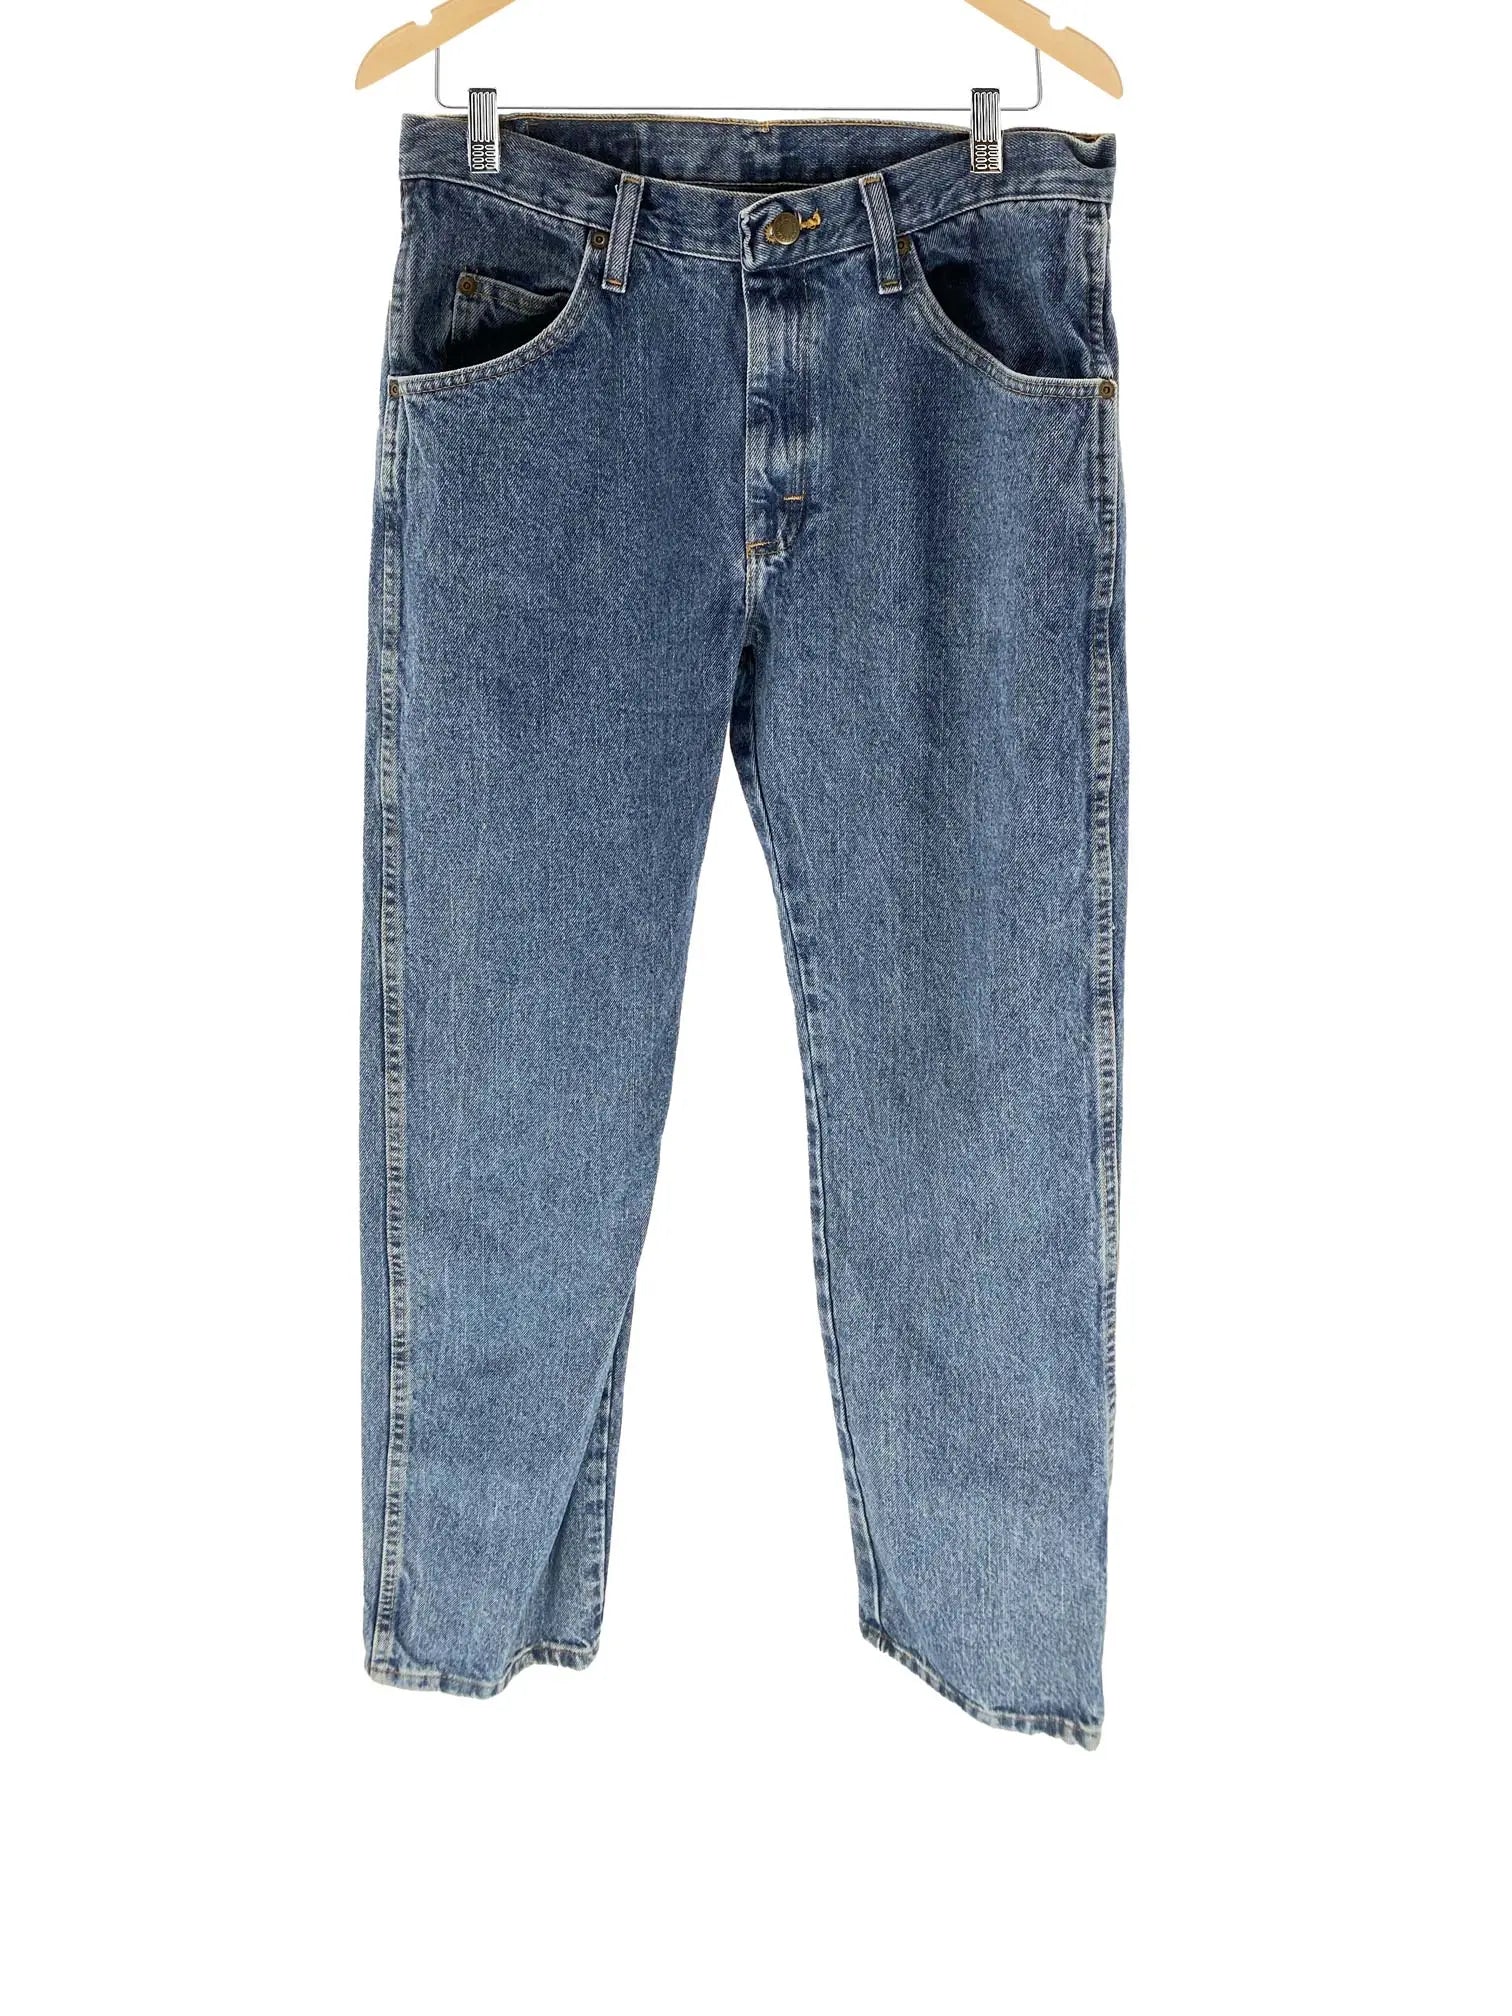 Wrangler Regular Fit Jeans - Men's 32x34 Great Lakes Reclaimed Denim